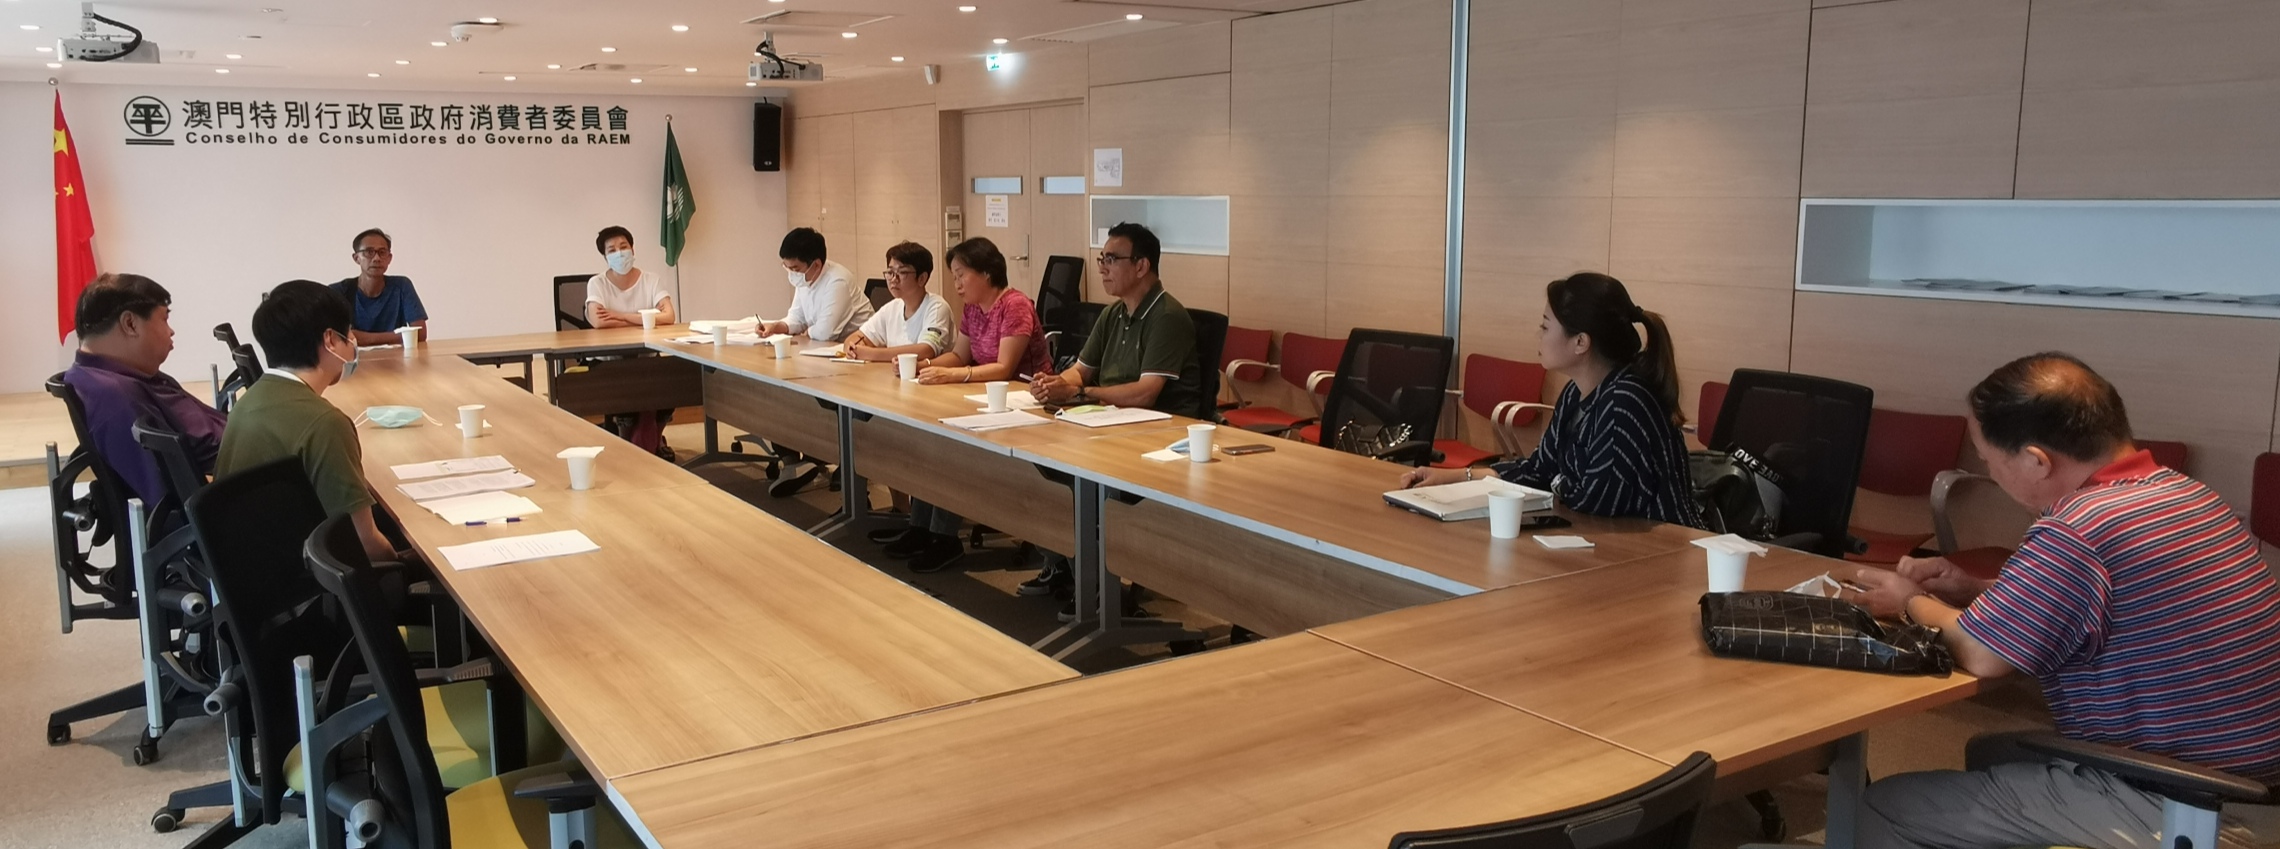 Reunião com o Conselho de Consumidores relativamente ao litígio das 50 famílias que compraram imoveis em Hengqing